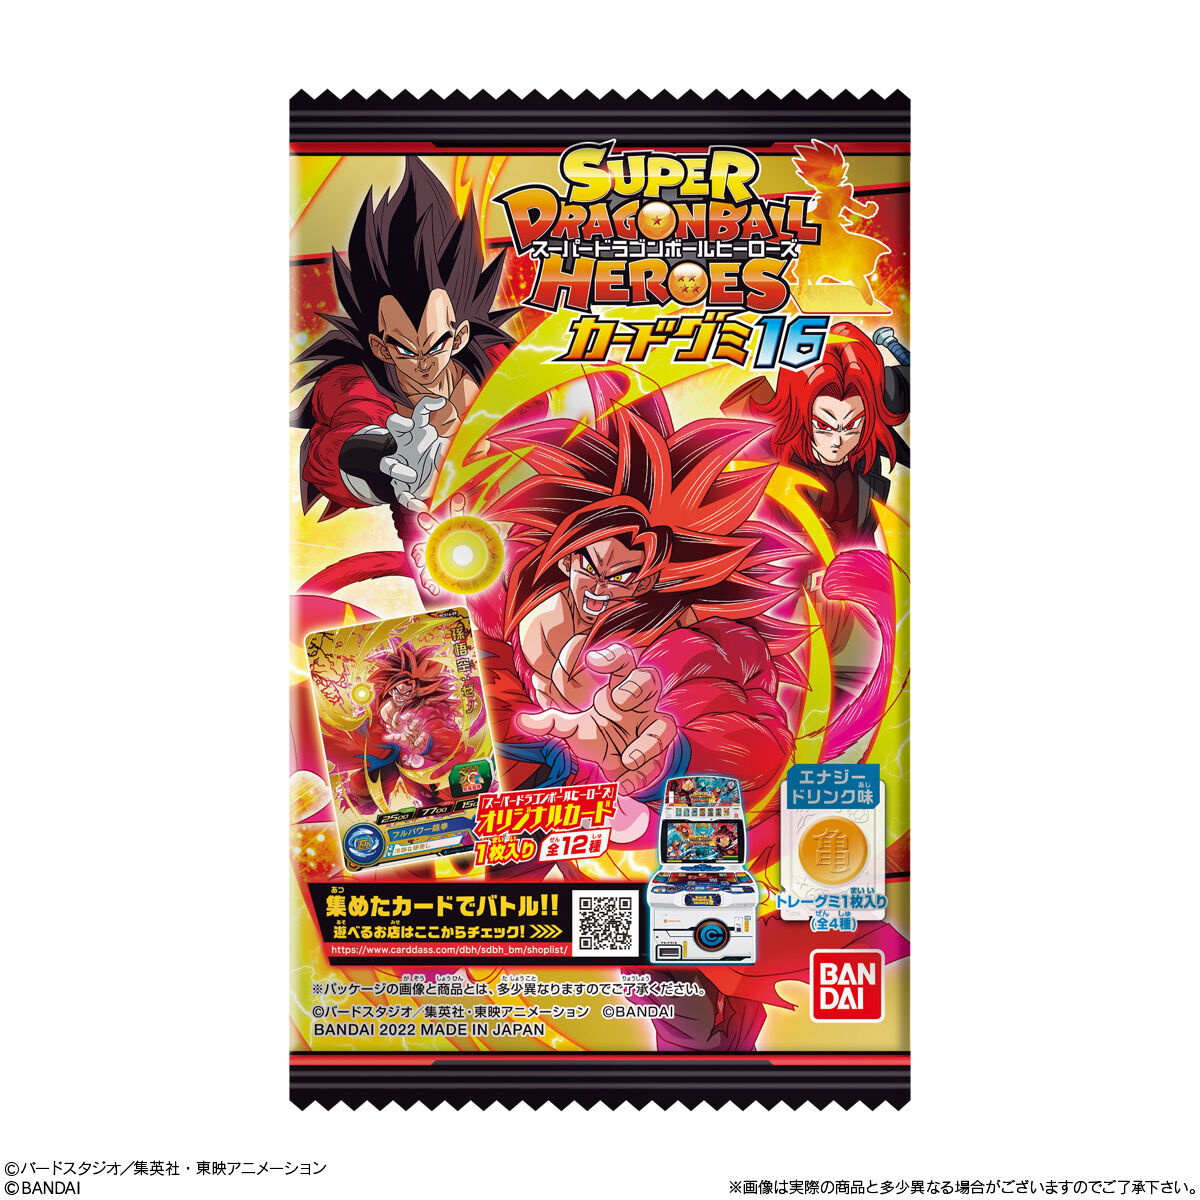 スーパードラゴンボールヒーローズカードグミ16 発売日 22年4月11日 バンダイ キャンディ公式サイト